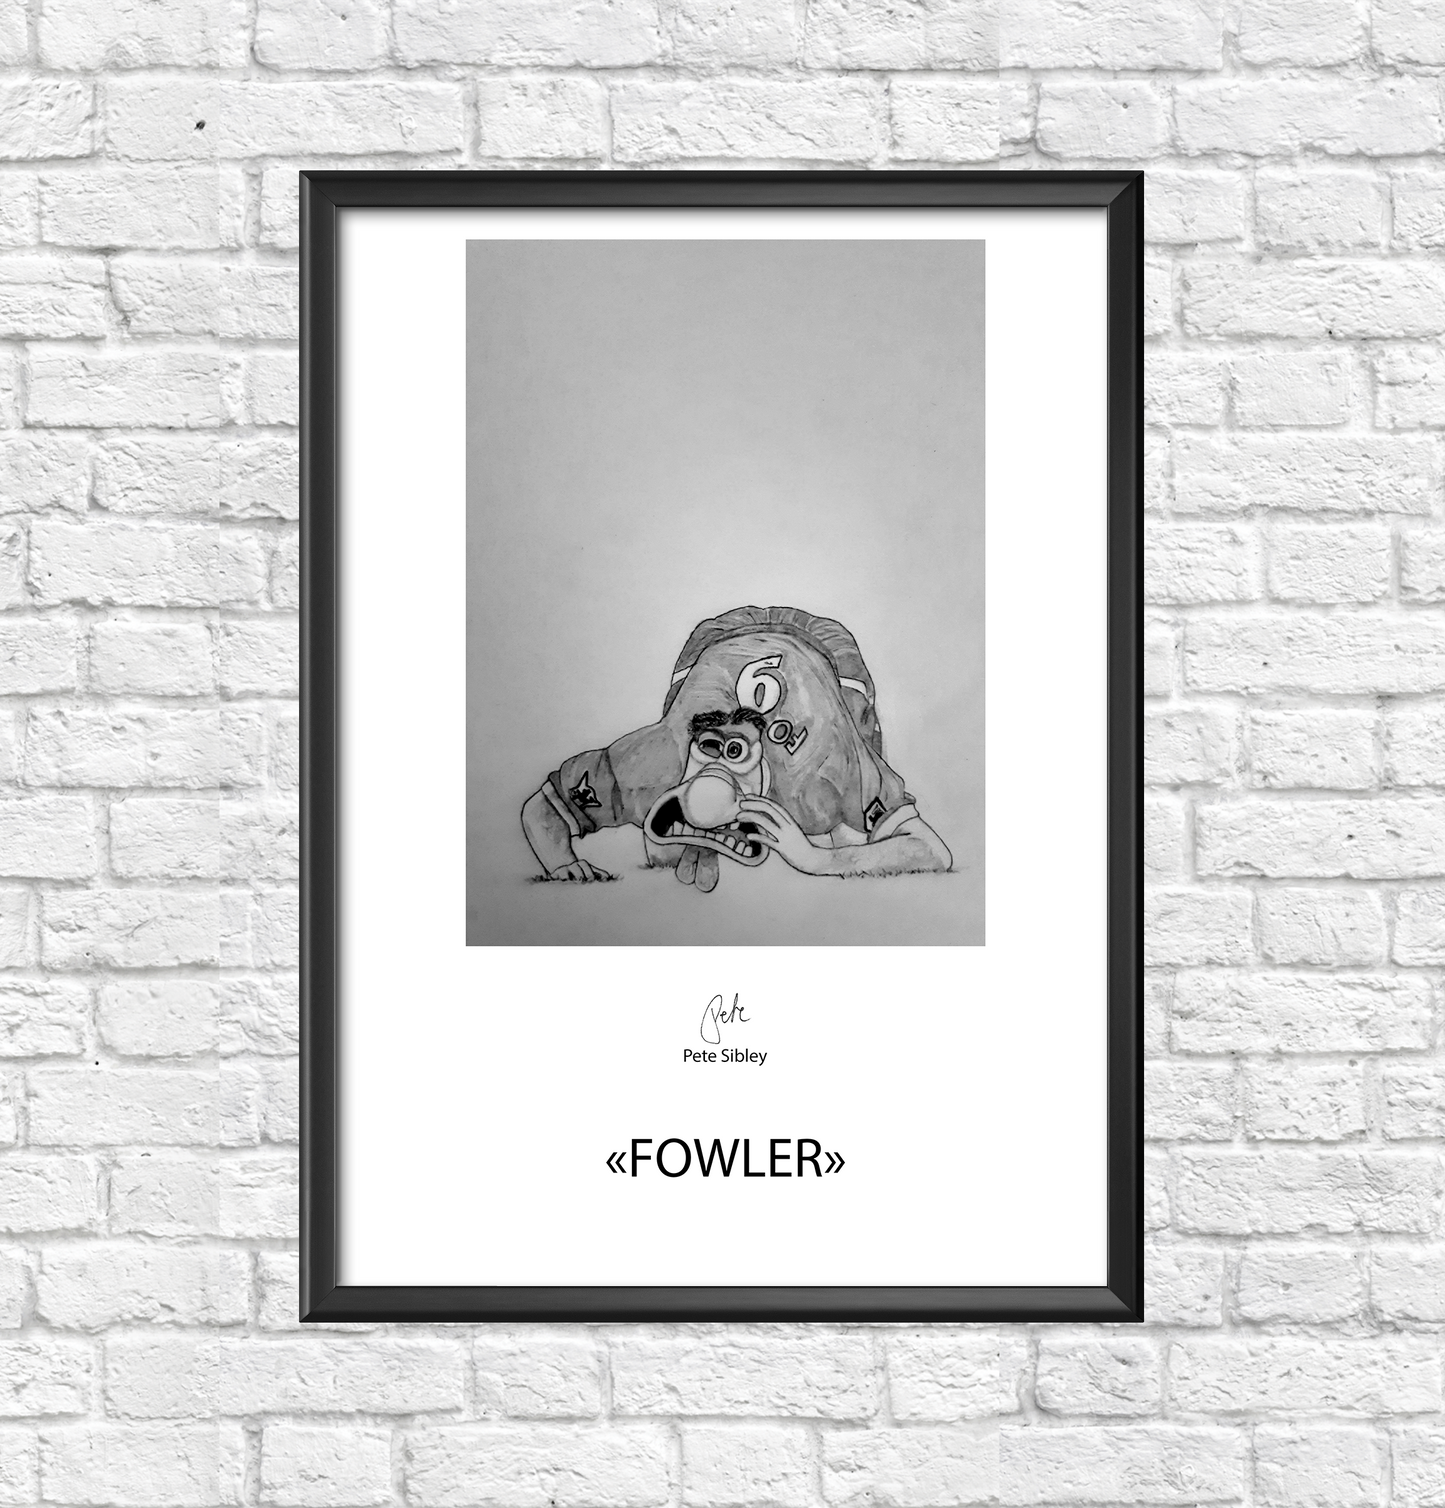 Fowler artposter